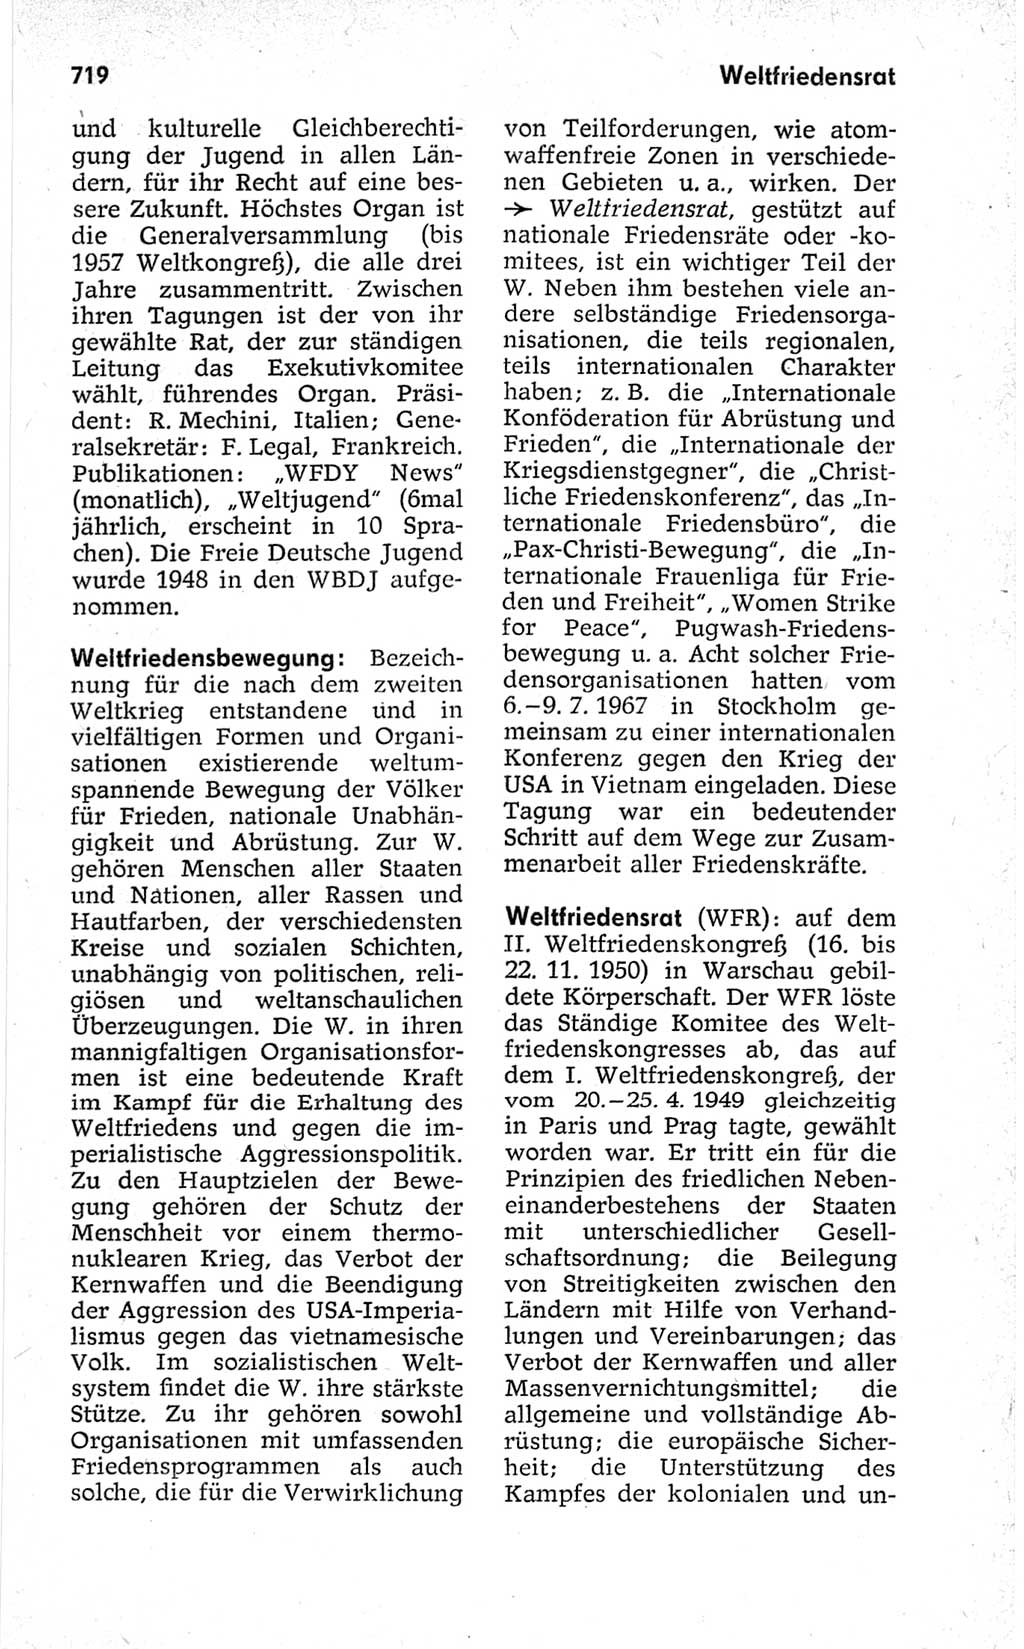 Kleines politisches Wörterbuch [Deutsche Demokratische Republik (DDR)] 1967, Seite 719 (Kl. pol. Wb. DDR 1967, S. 719)